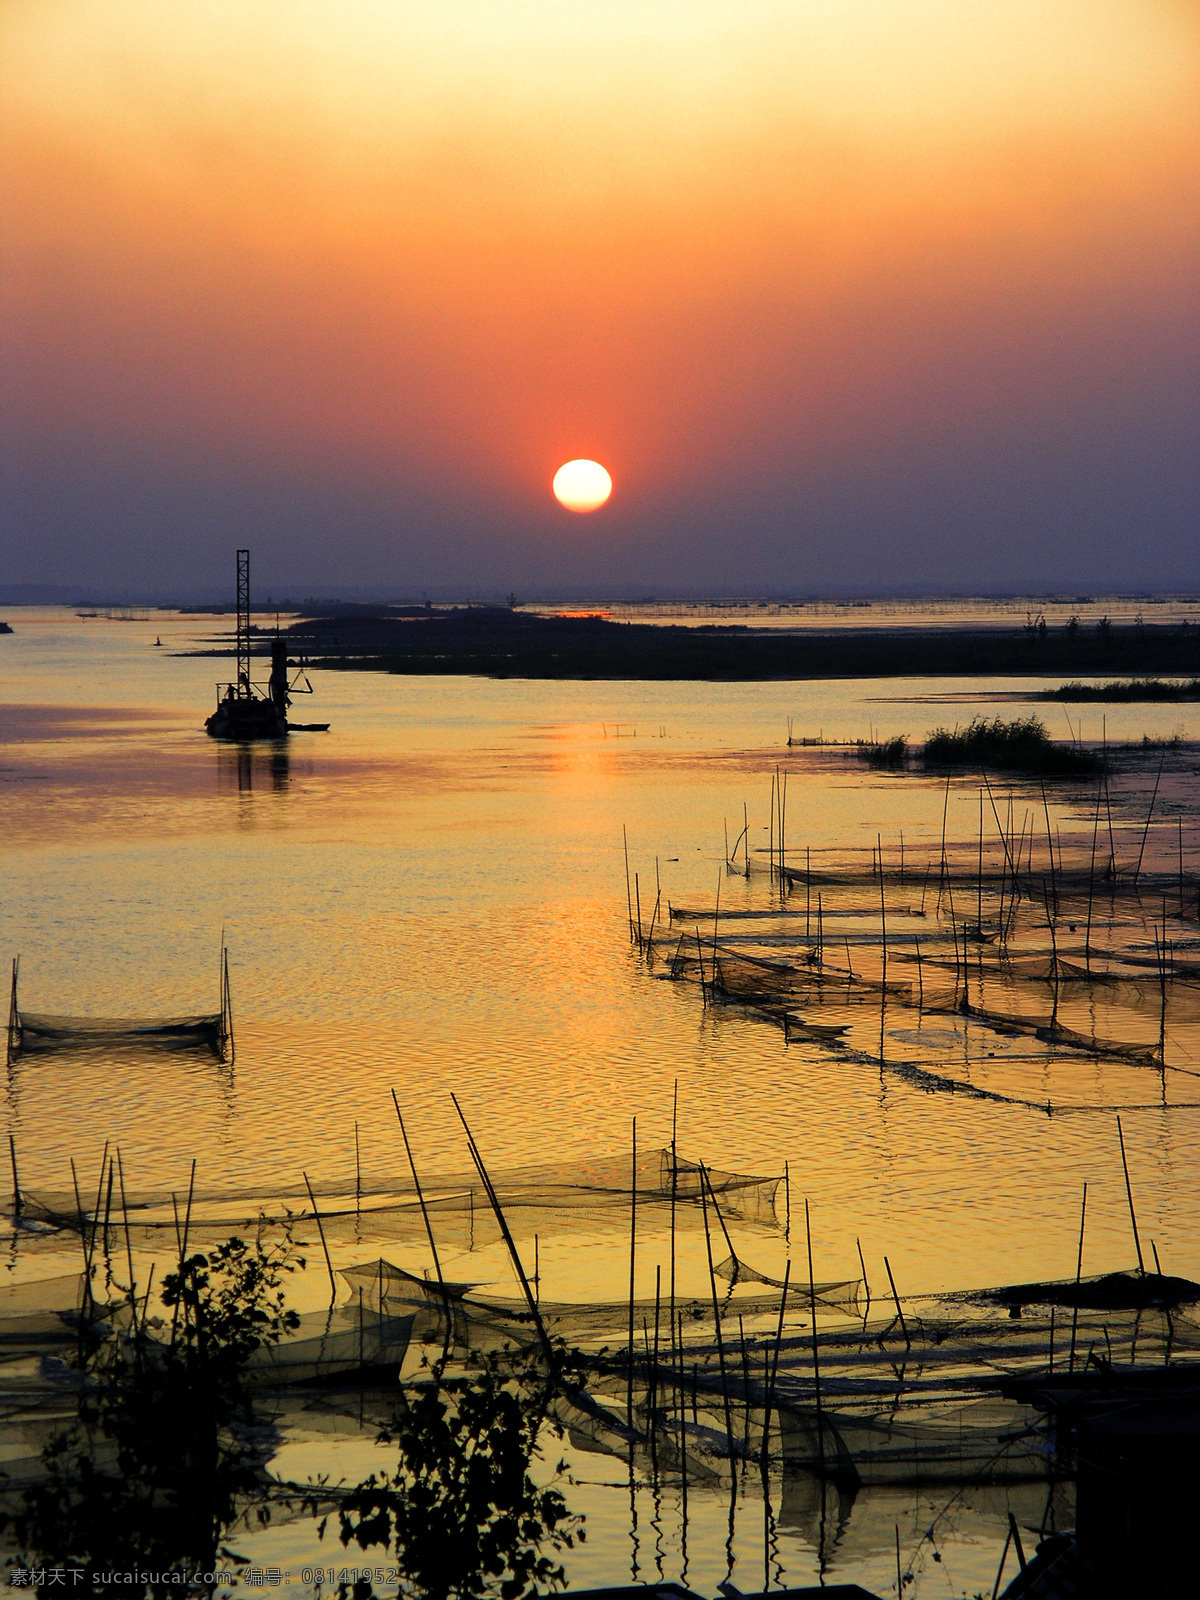 夕阳 下 微山湖 芦苇 小船 打渔 自然风景 自然景观